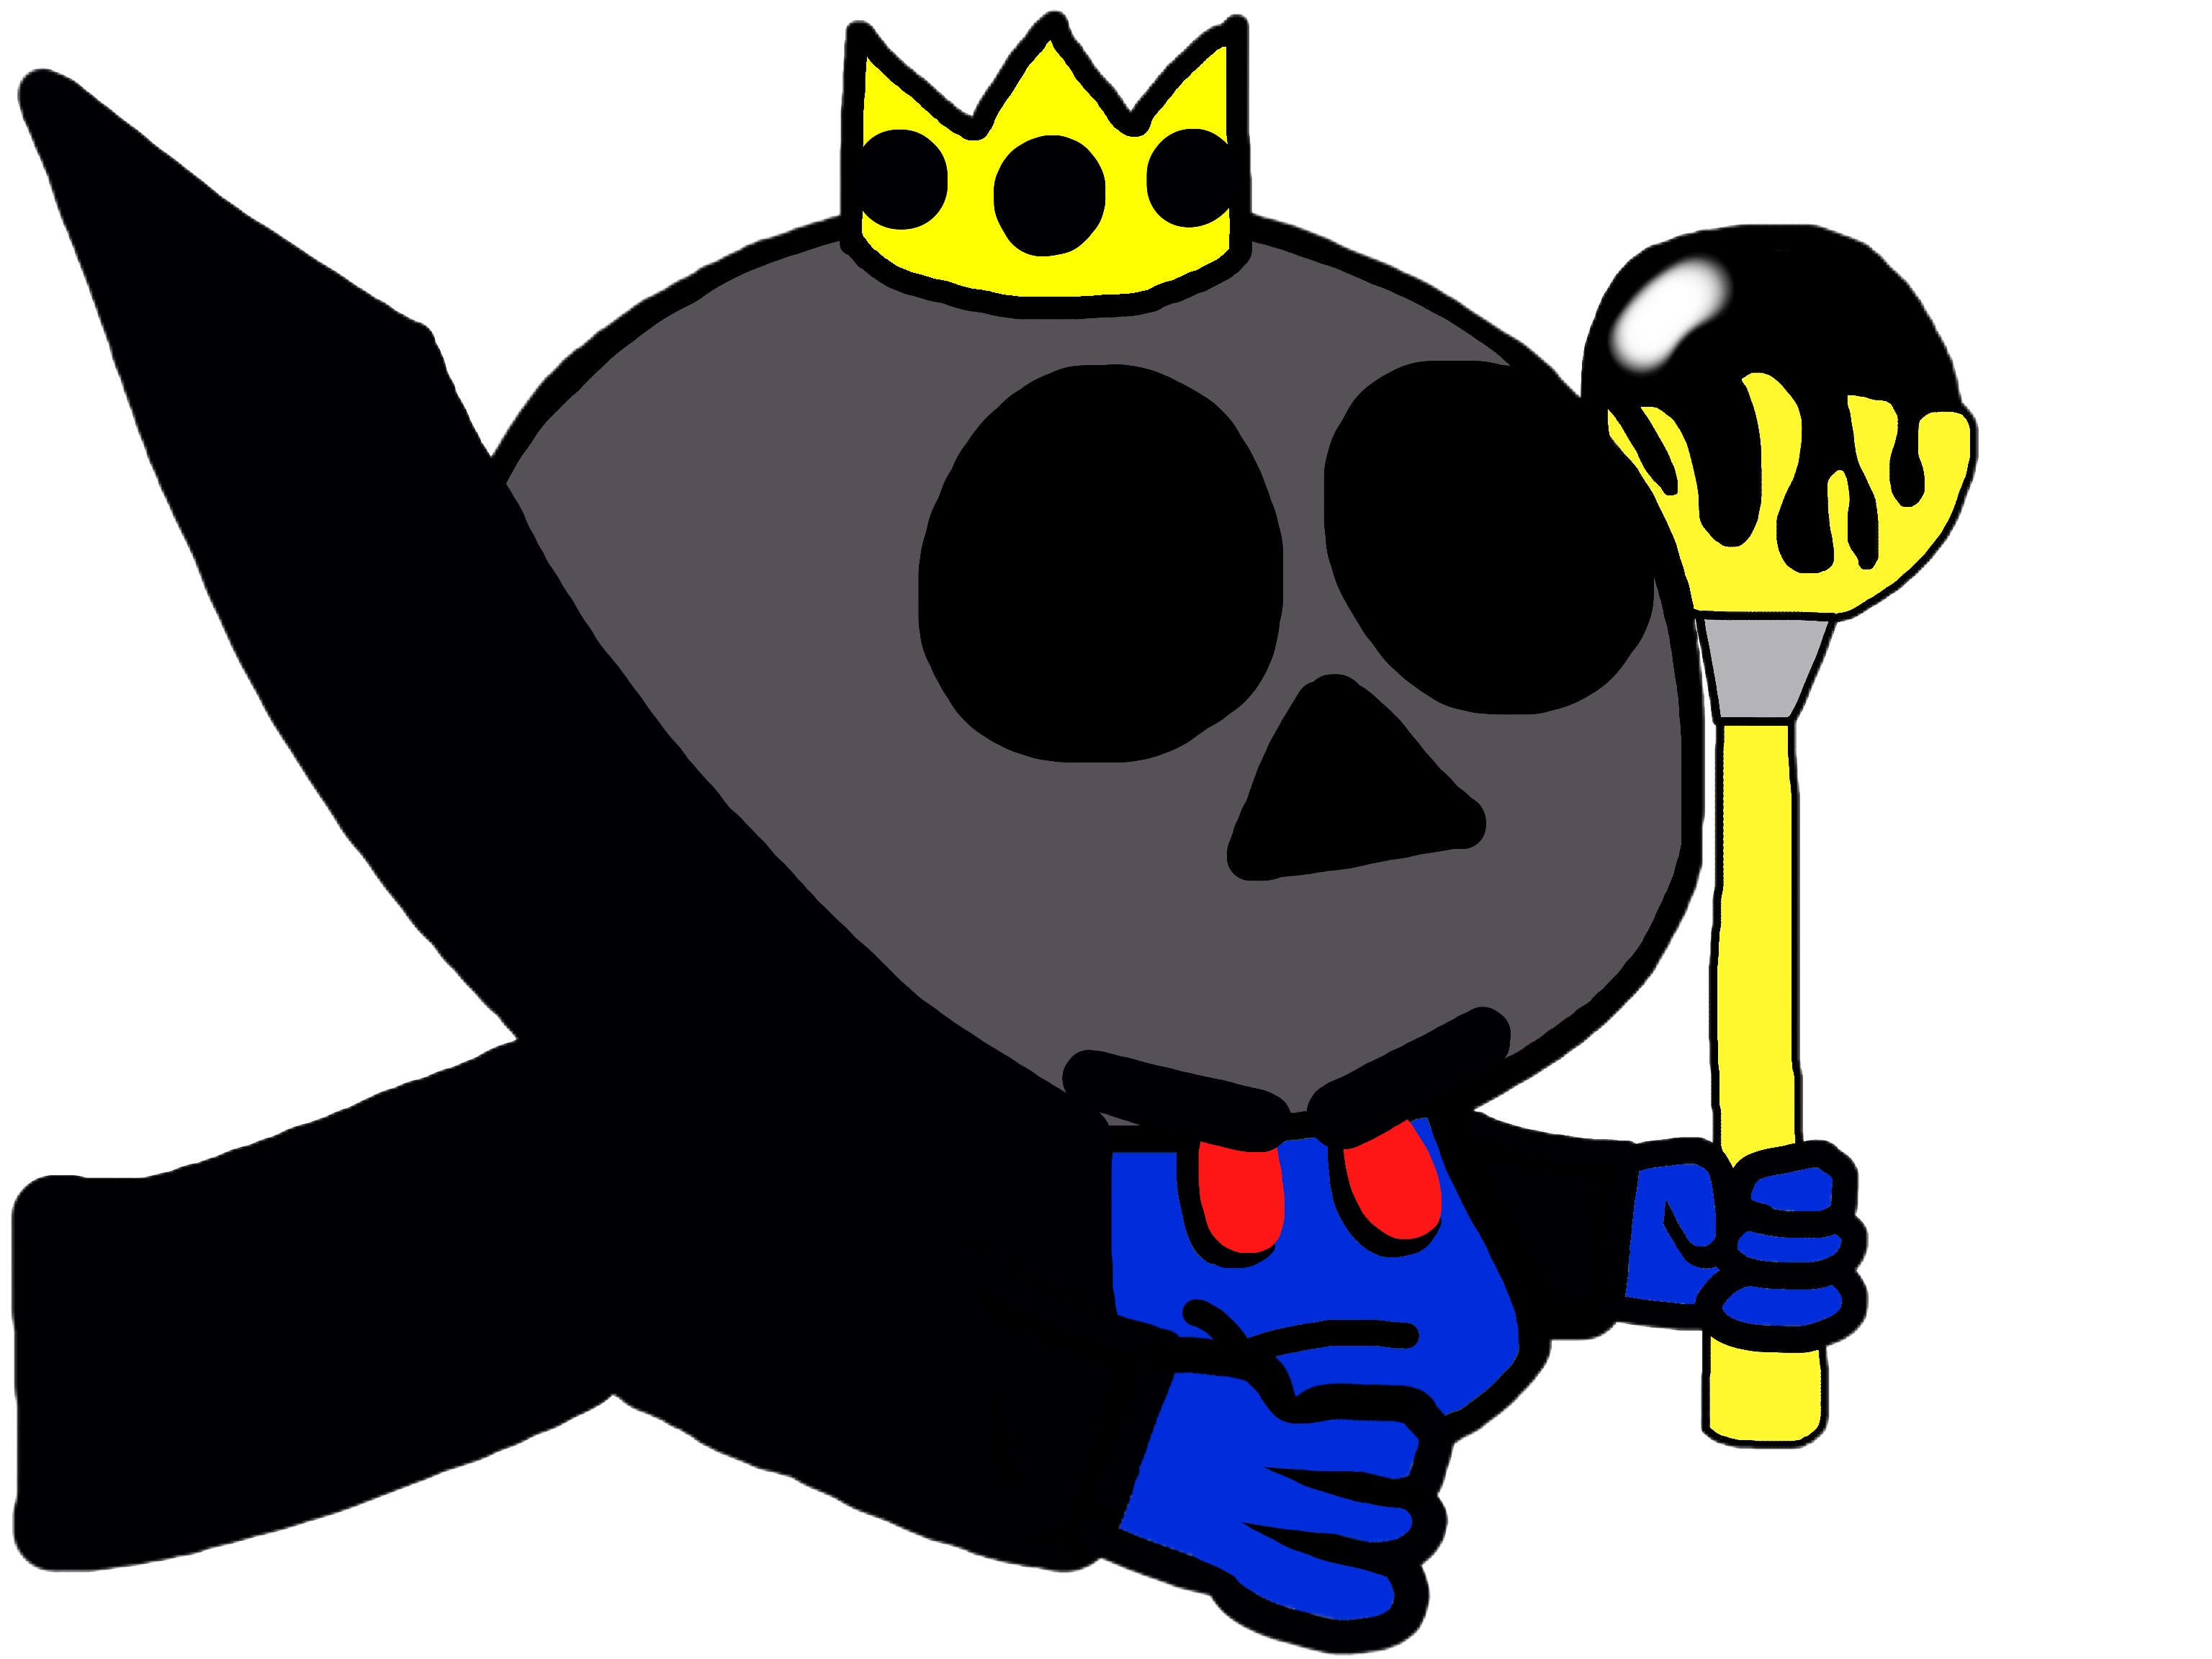 King's Skull